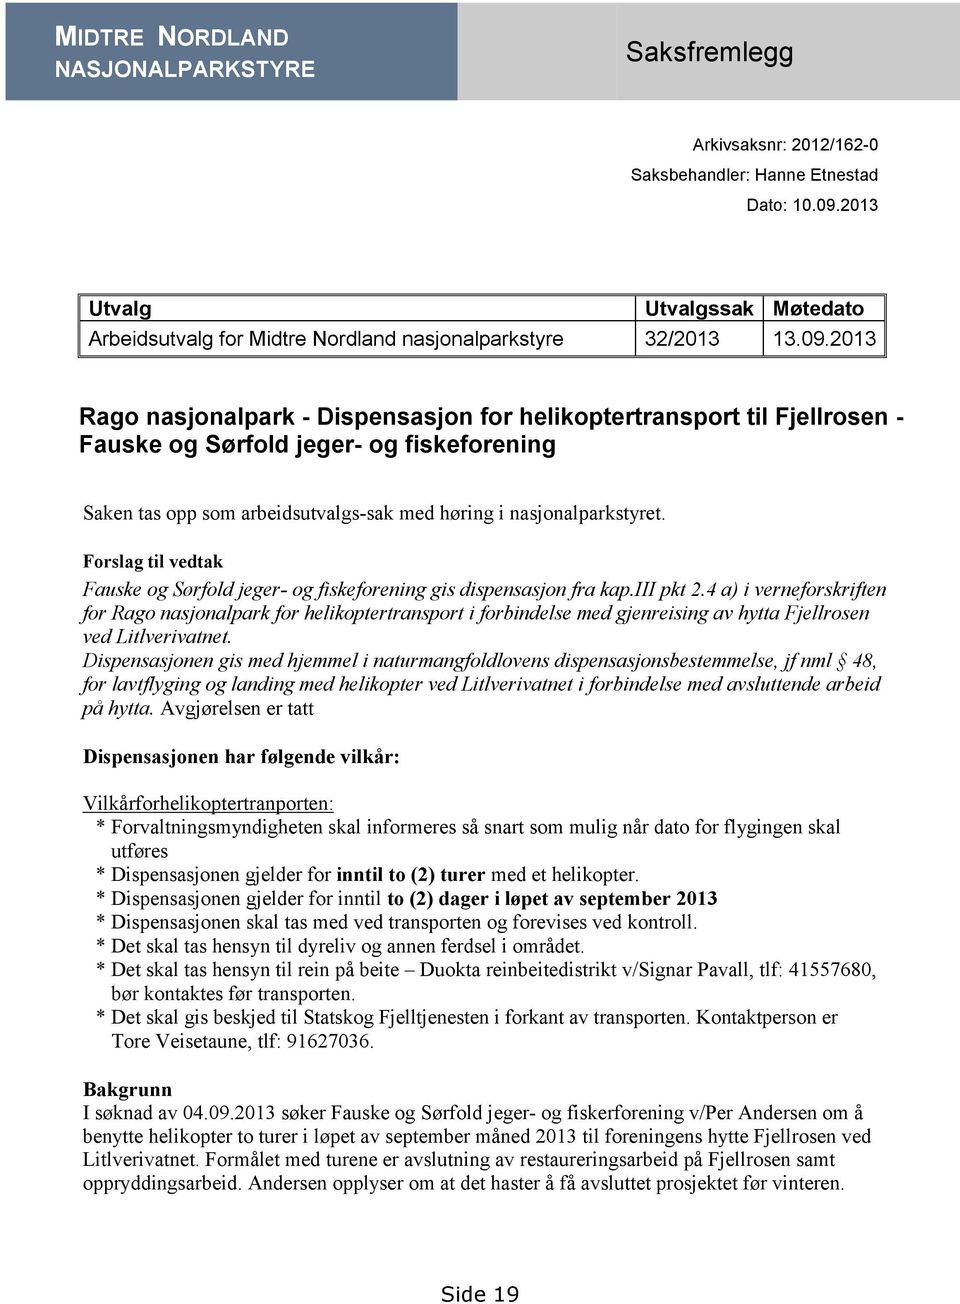 2013 Rago nasjonalpark - Dispensasjon for helikoptertransport til Fjellrosen - Fauske og Sørfold jeger- og fiskeforening Saken tas opp som arbeidsutvalgs-sak med høring i nasjonalparkstyret.